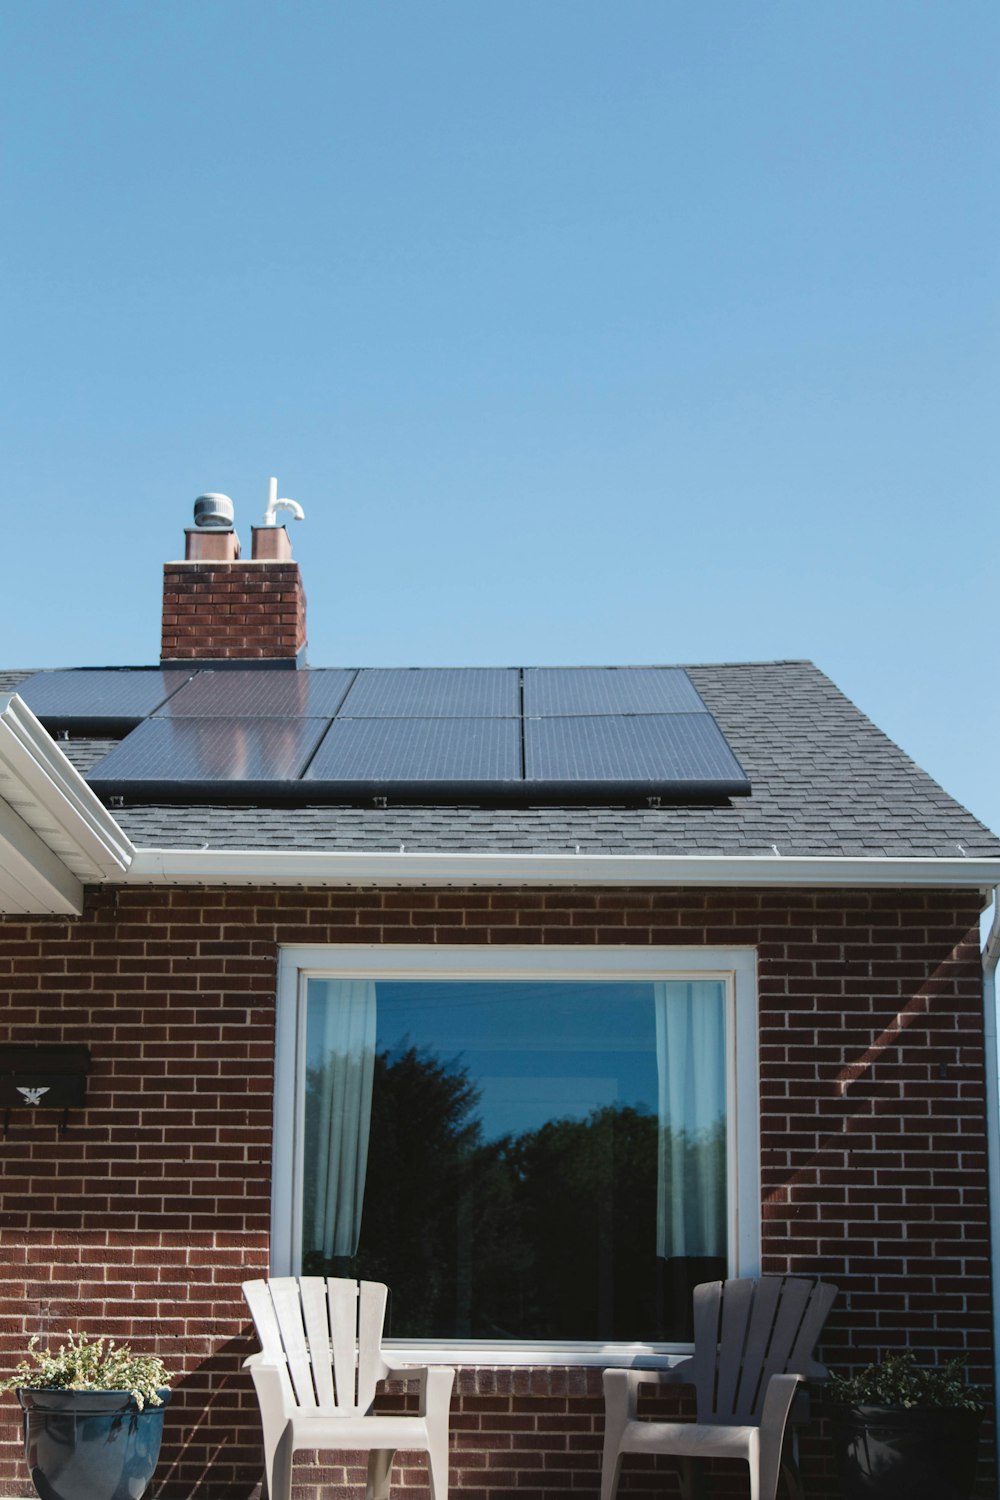 Maison en brique brune avec panneaux solaires sur le toit